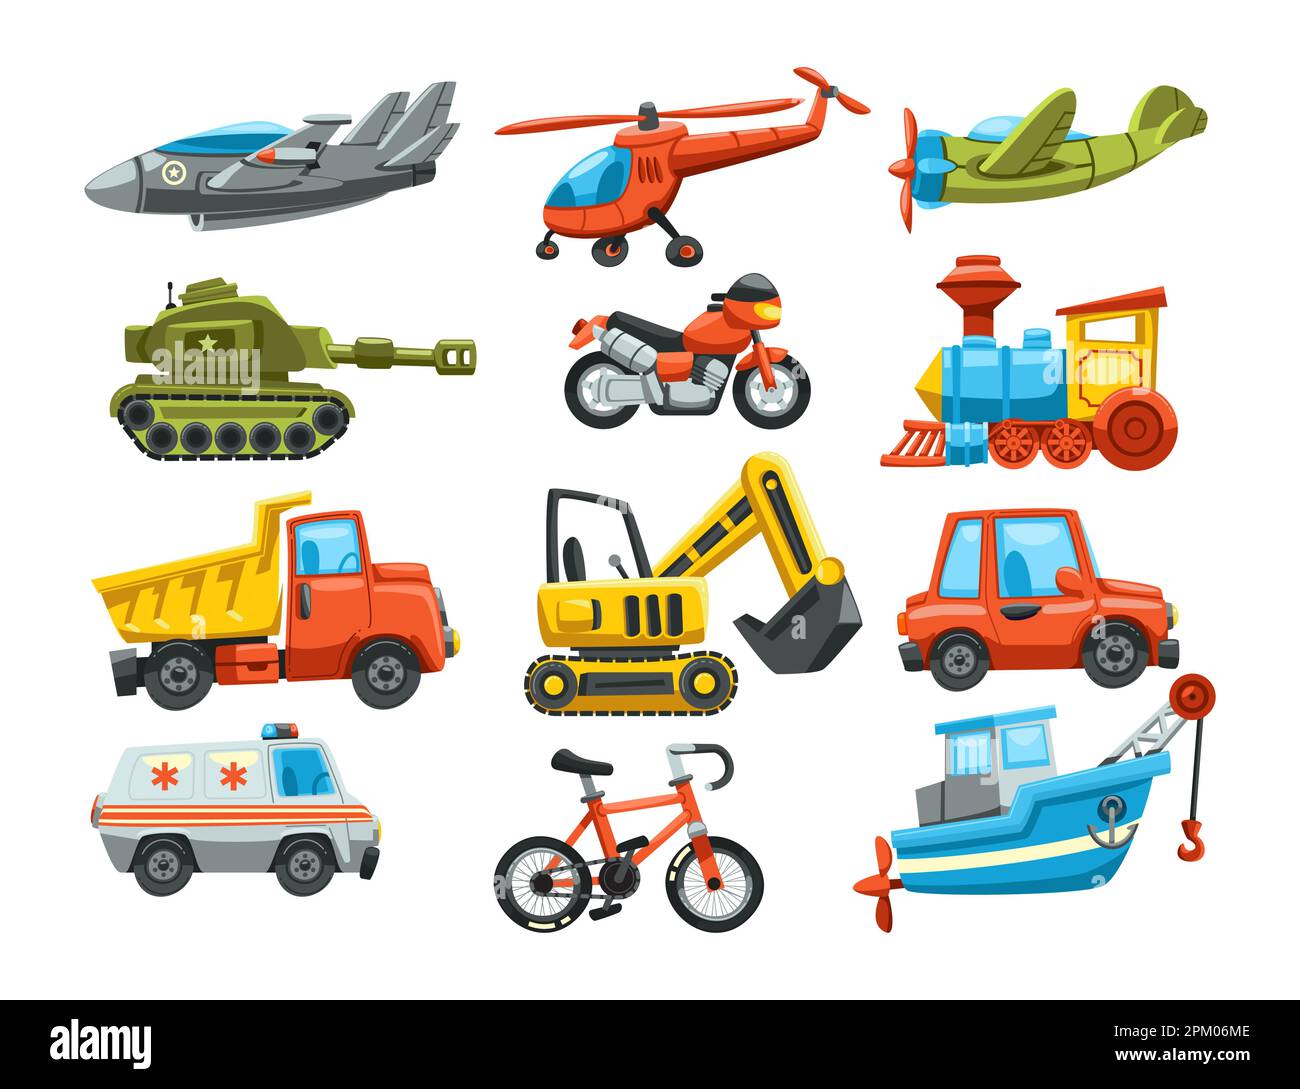 Verschiedene Spielzeuge für den Transport für Kinder mit flachen Vektorgrafiken Stock Vektor